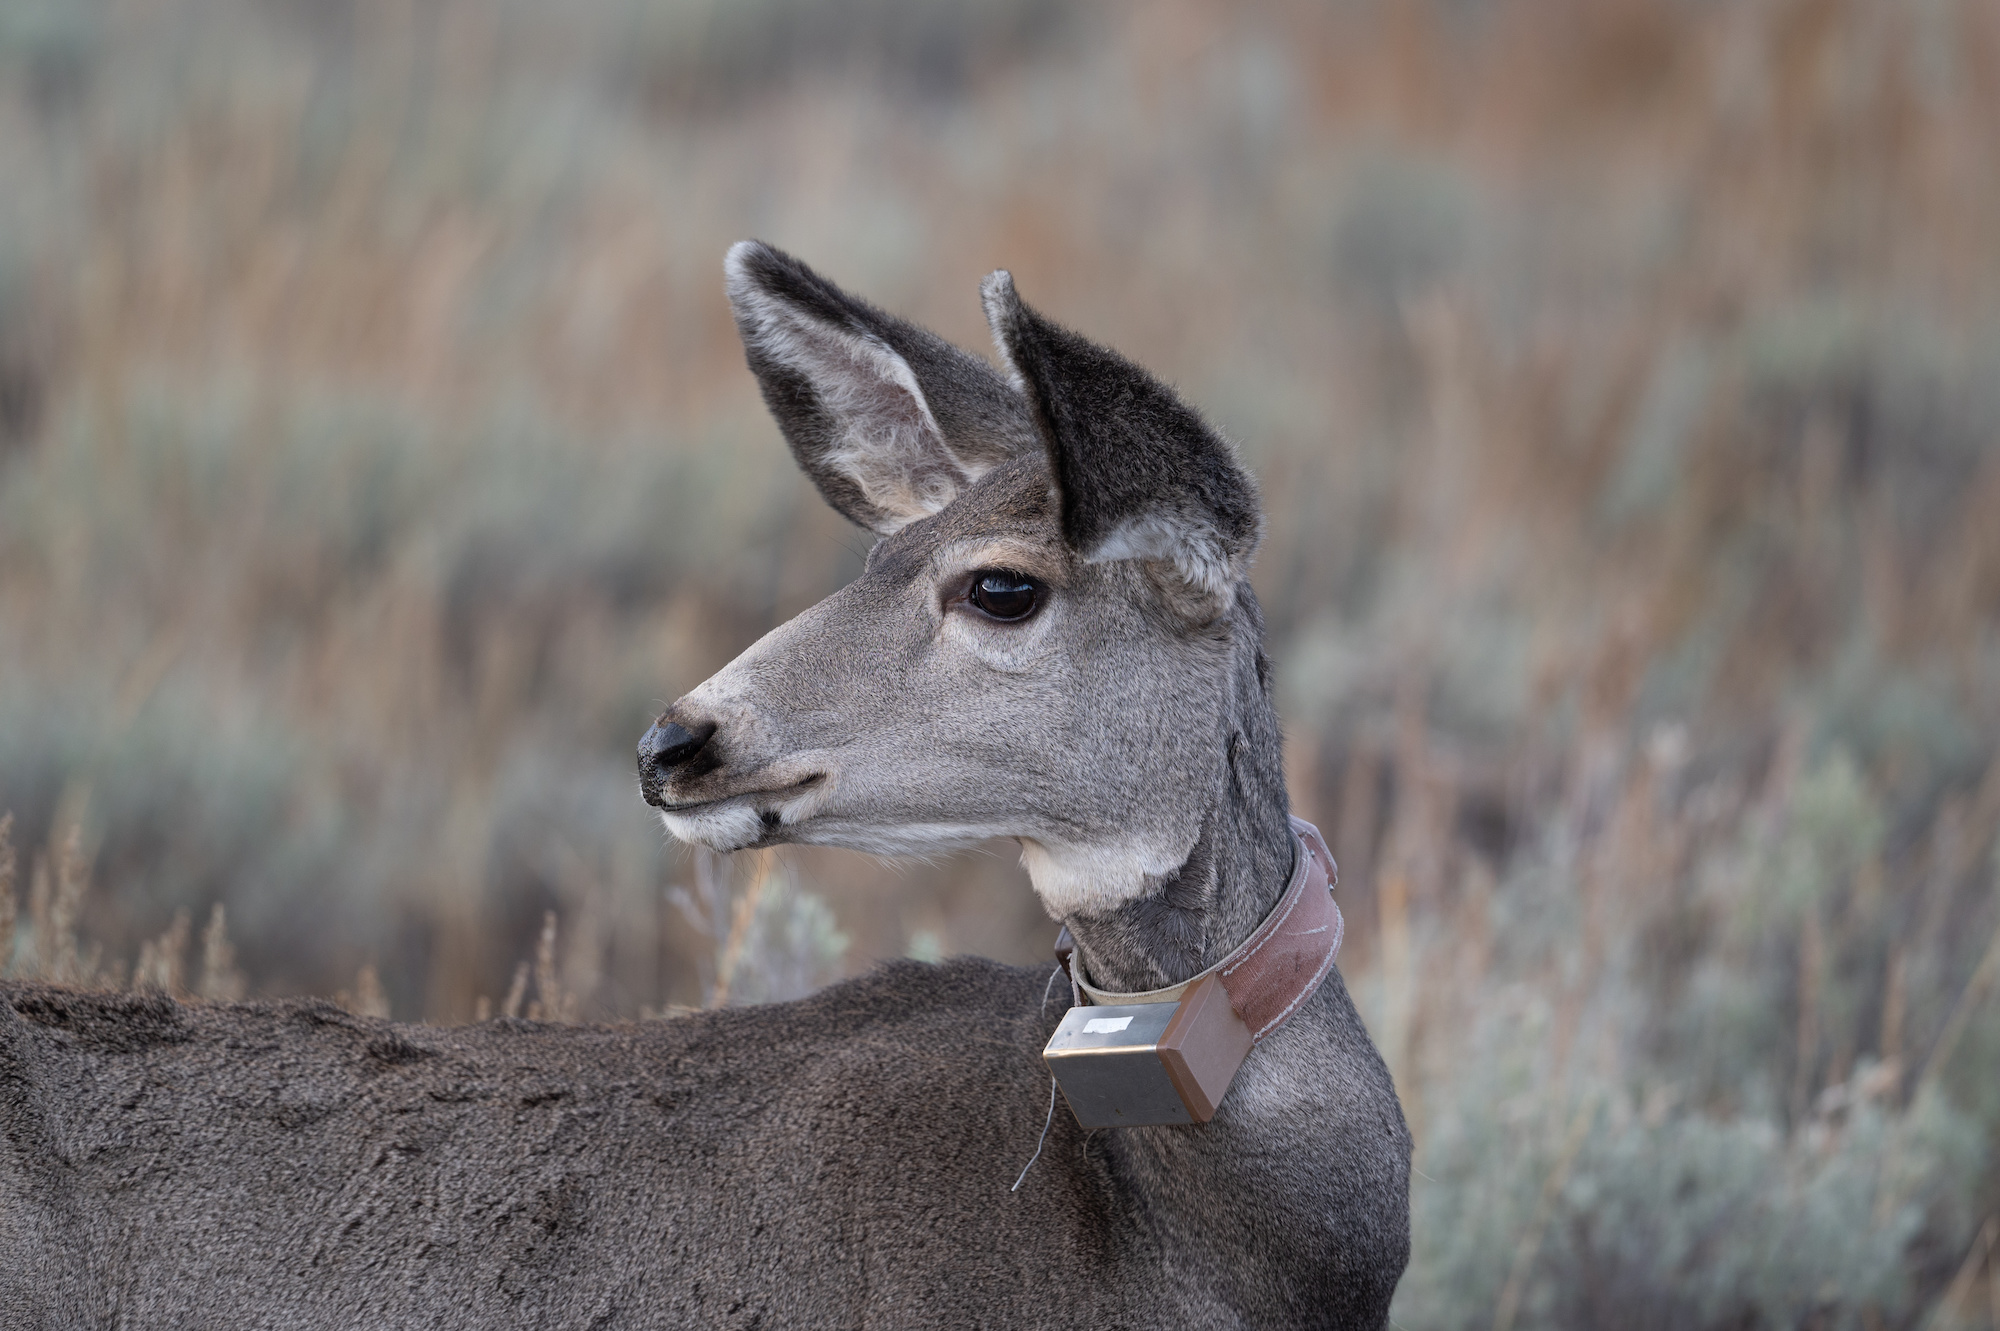 Mule deer doe with a GPS collar